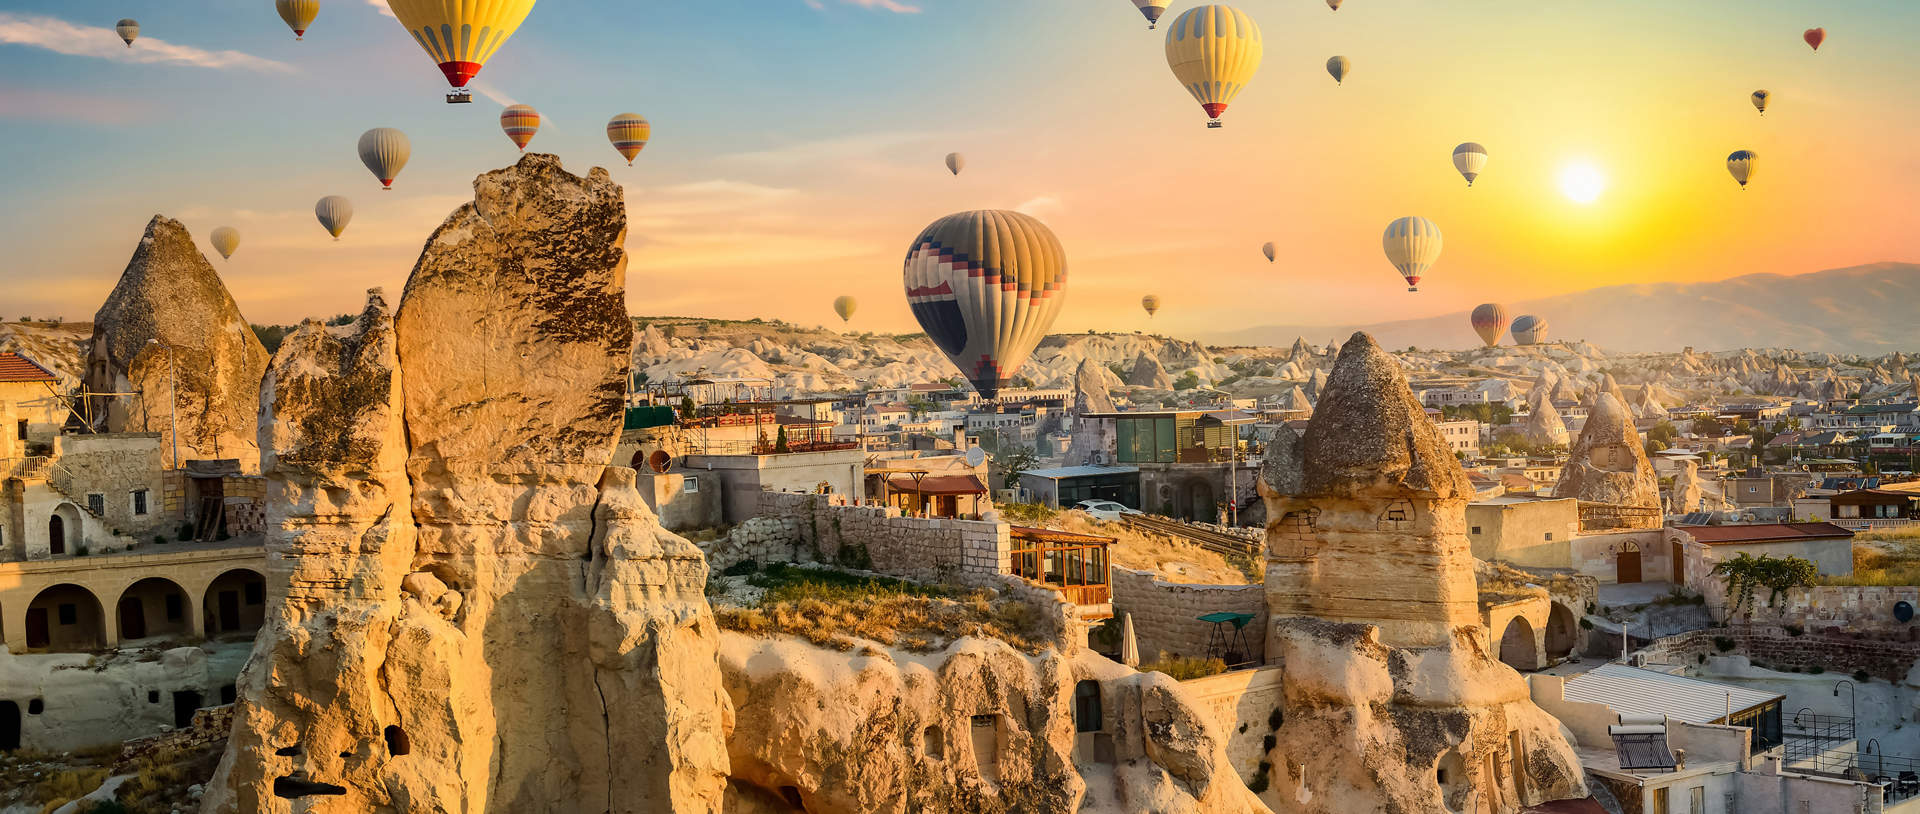 Hot Air Balloons Over Cappadocia Turkey